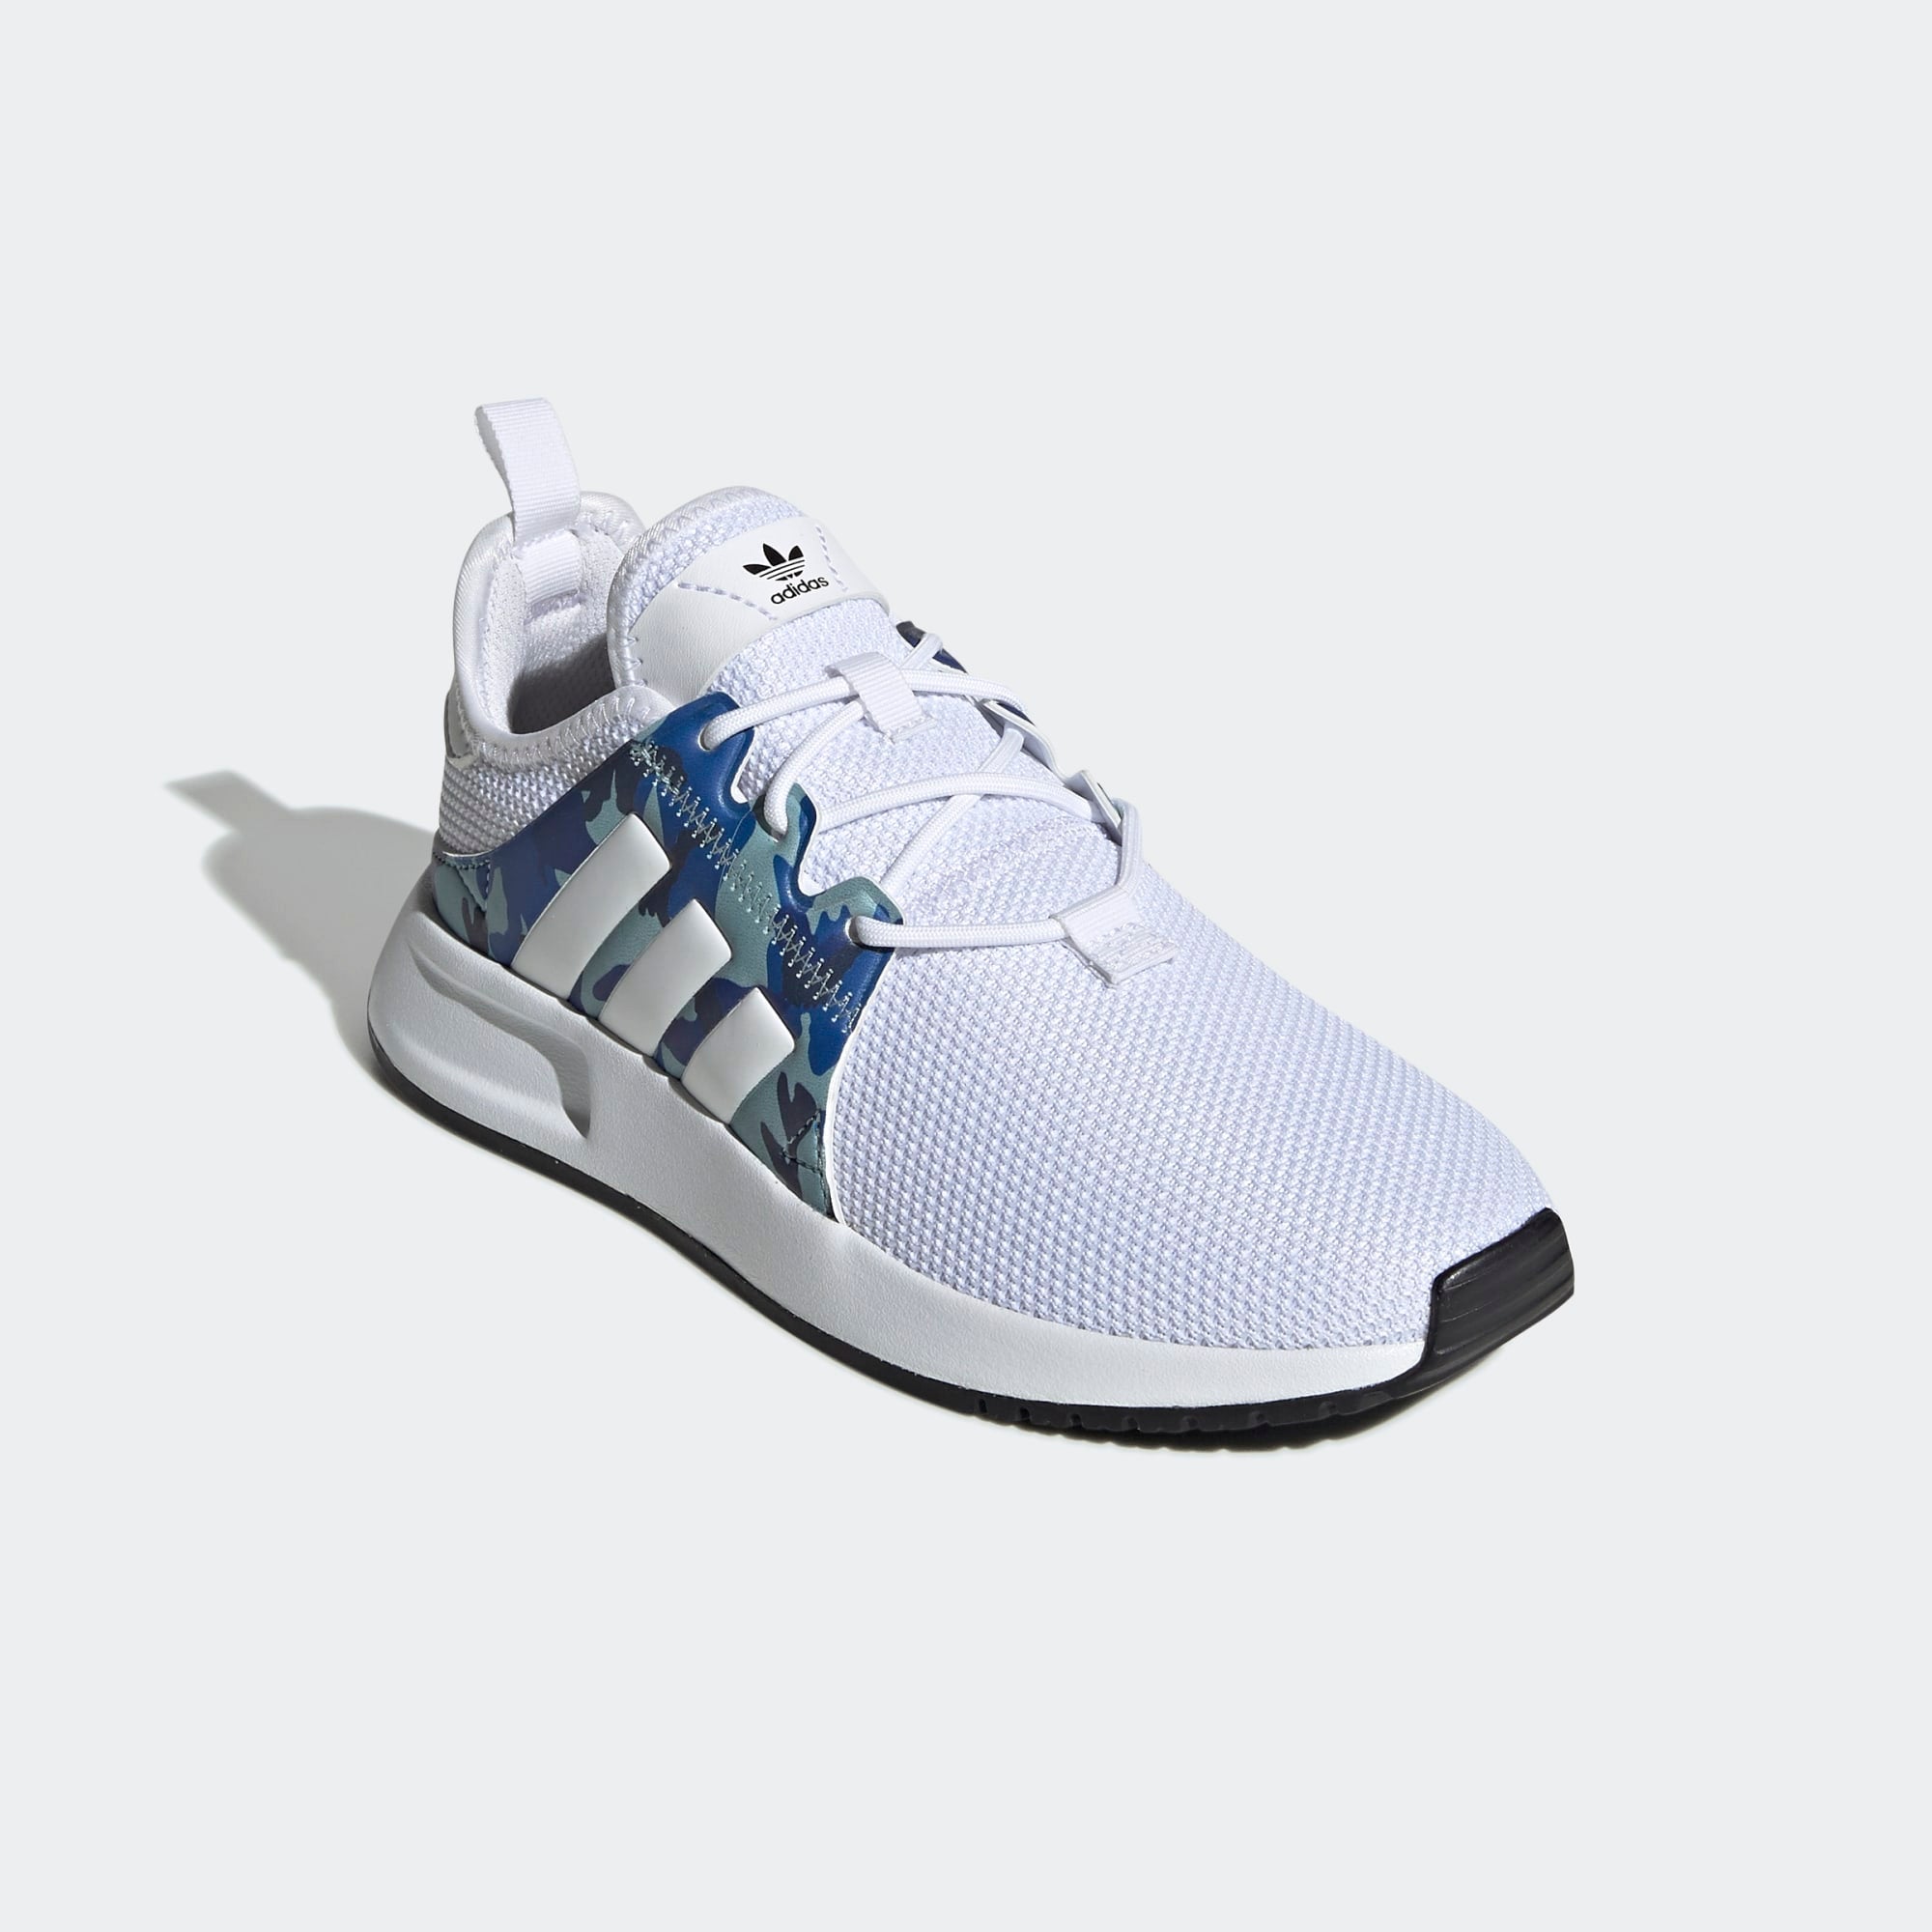 adidas white camo shoes